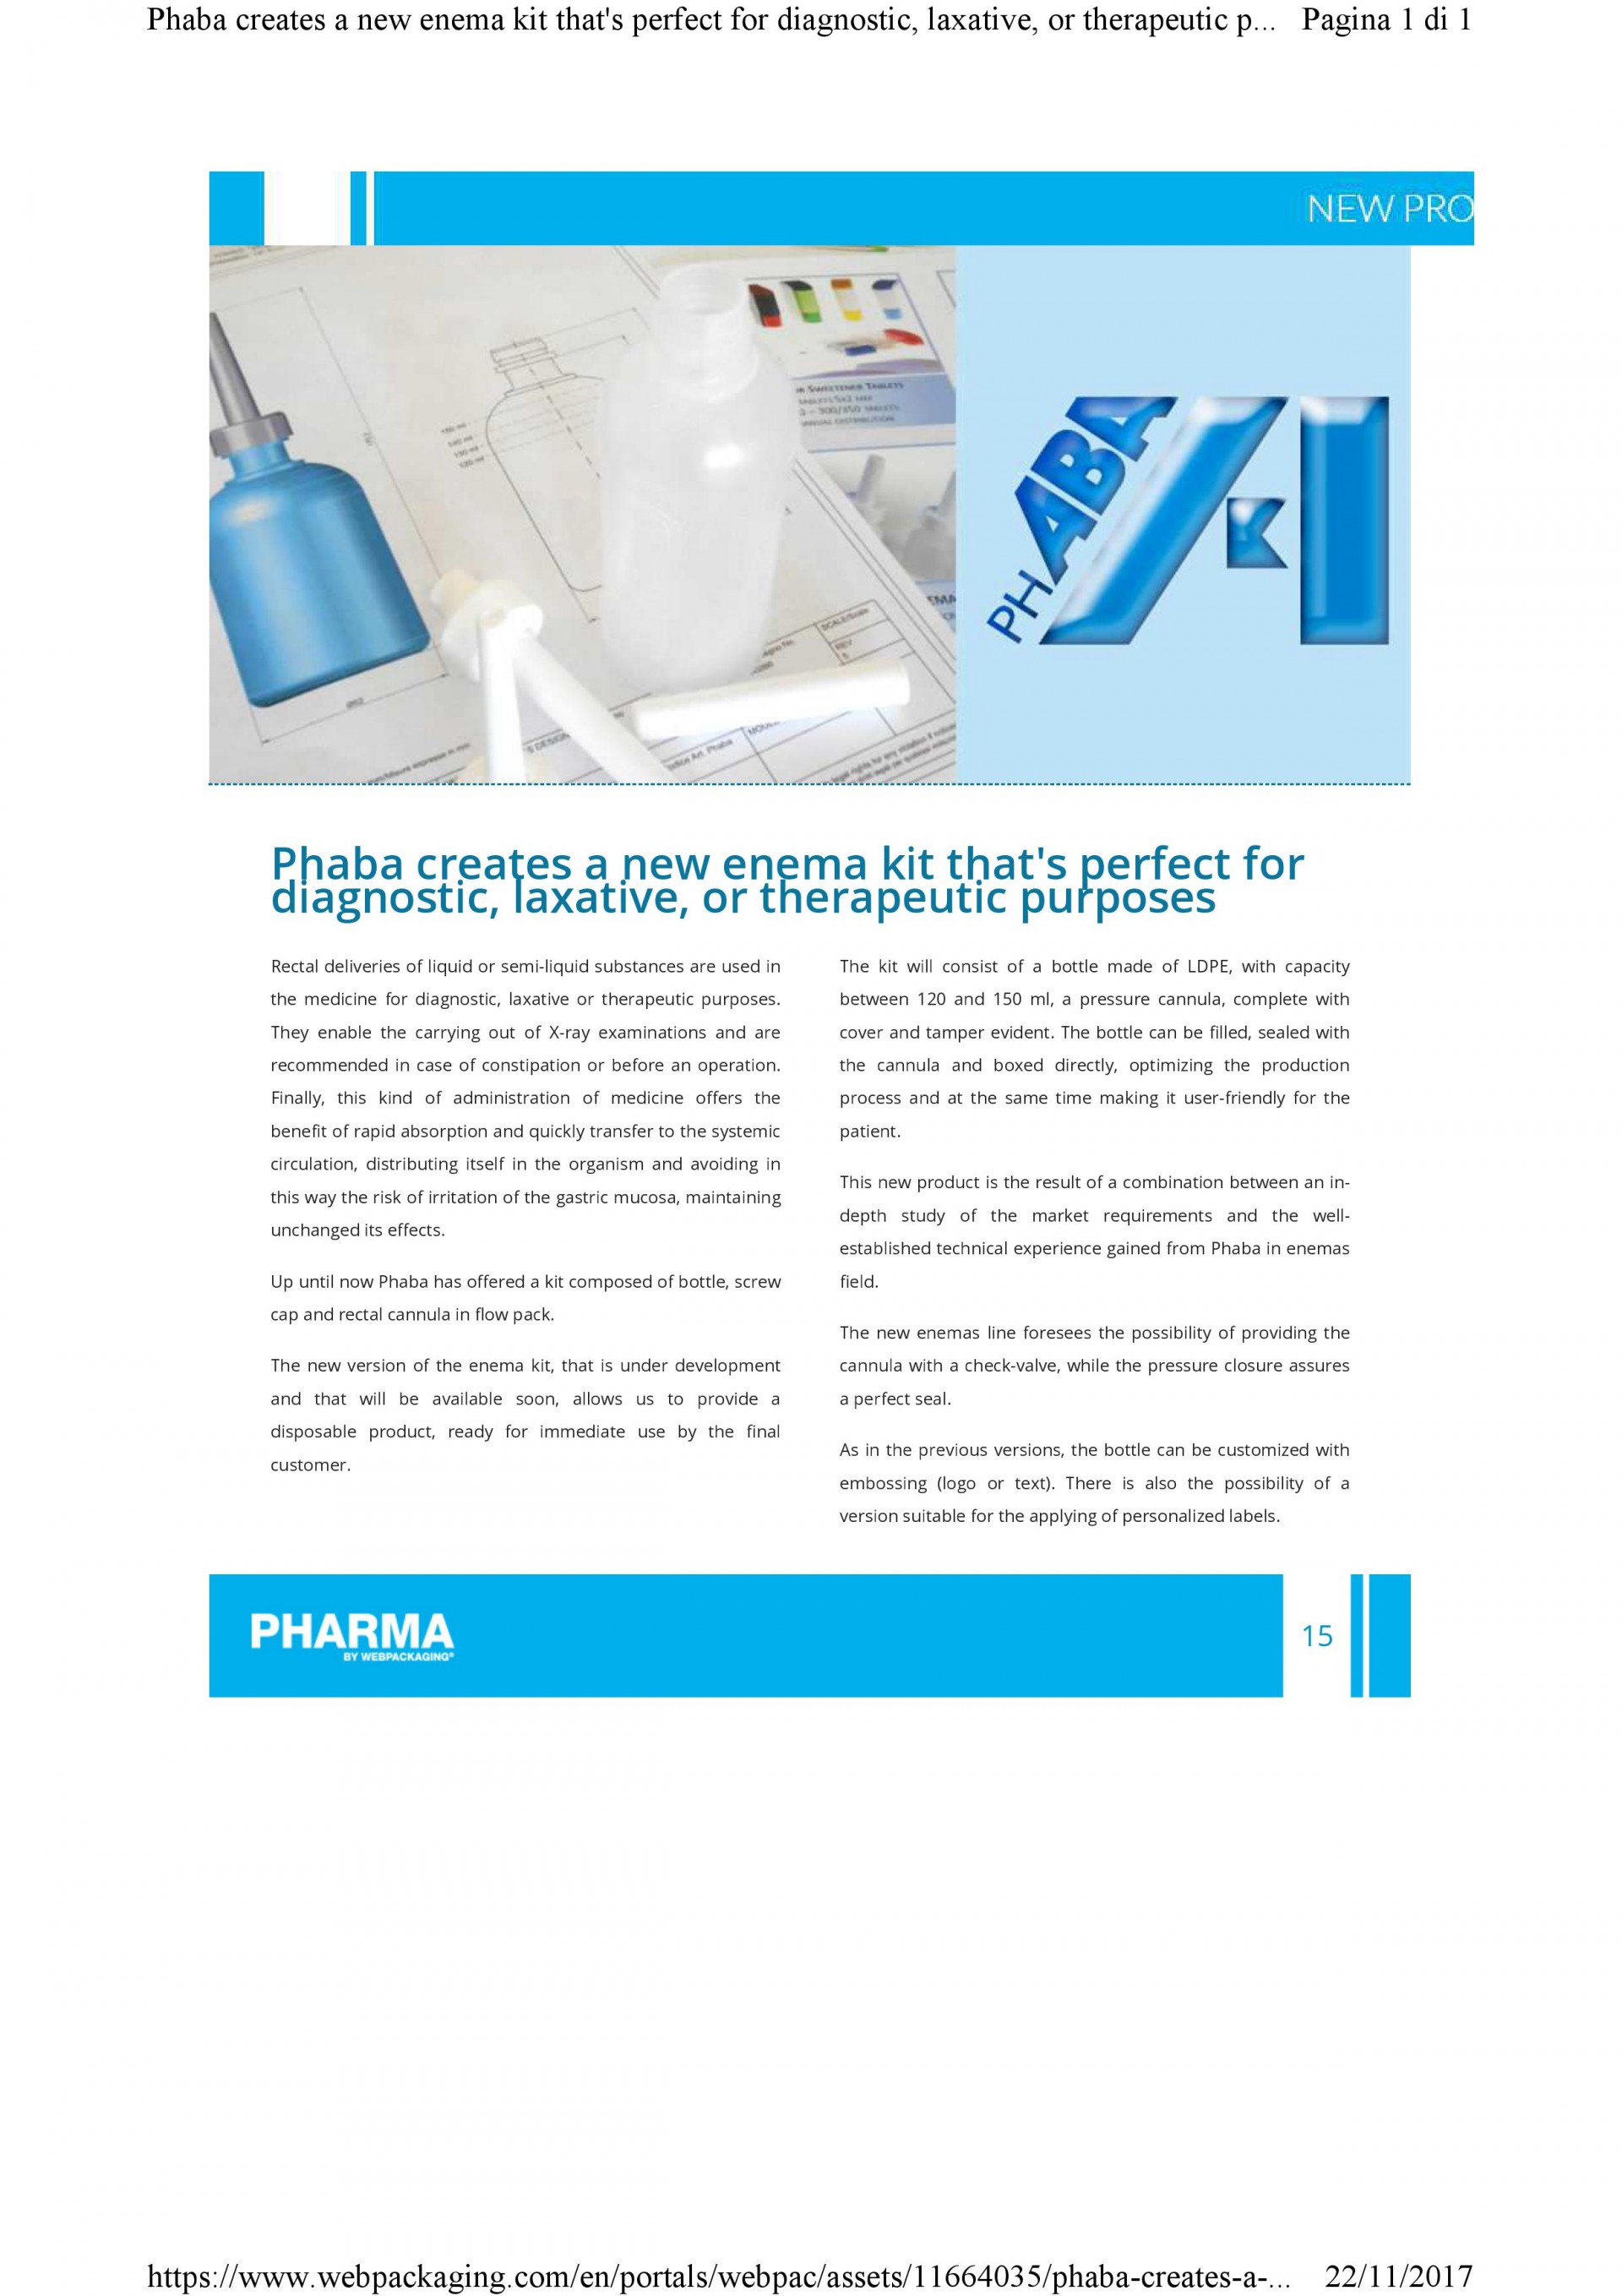 Phaba en la revista “Pharma” – Webpackaging